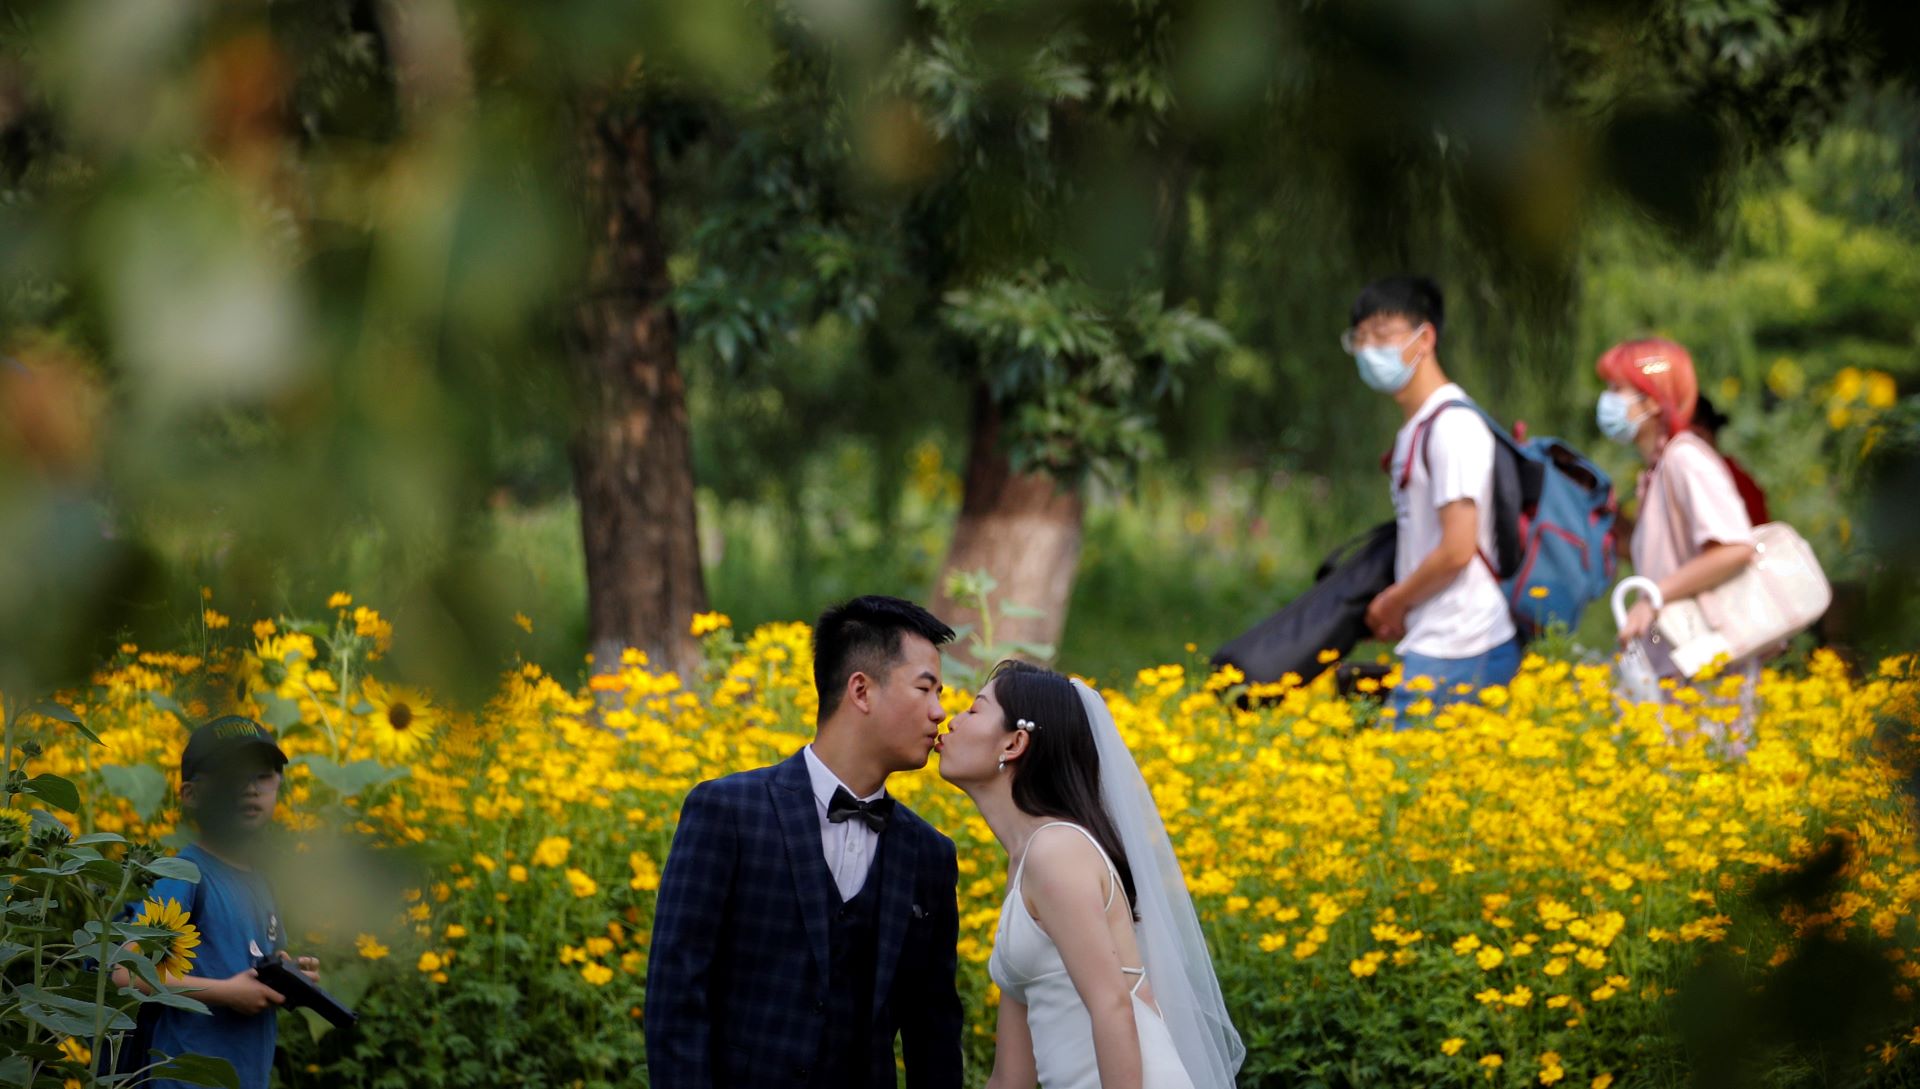 Bonus martese kur nusja është nën 25 vjeç në Kinë